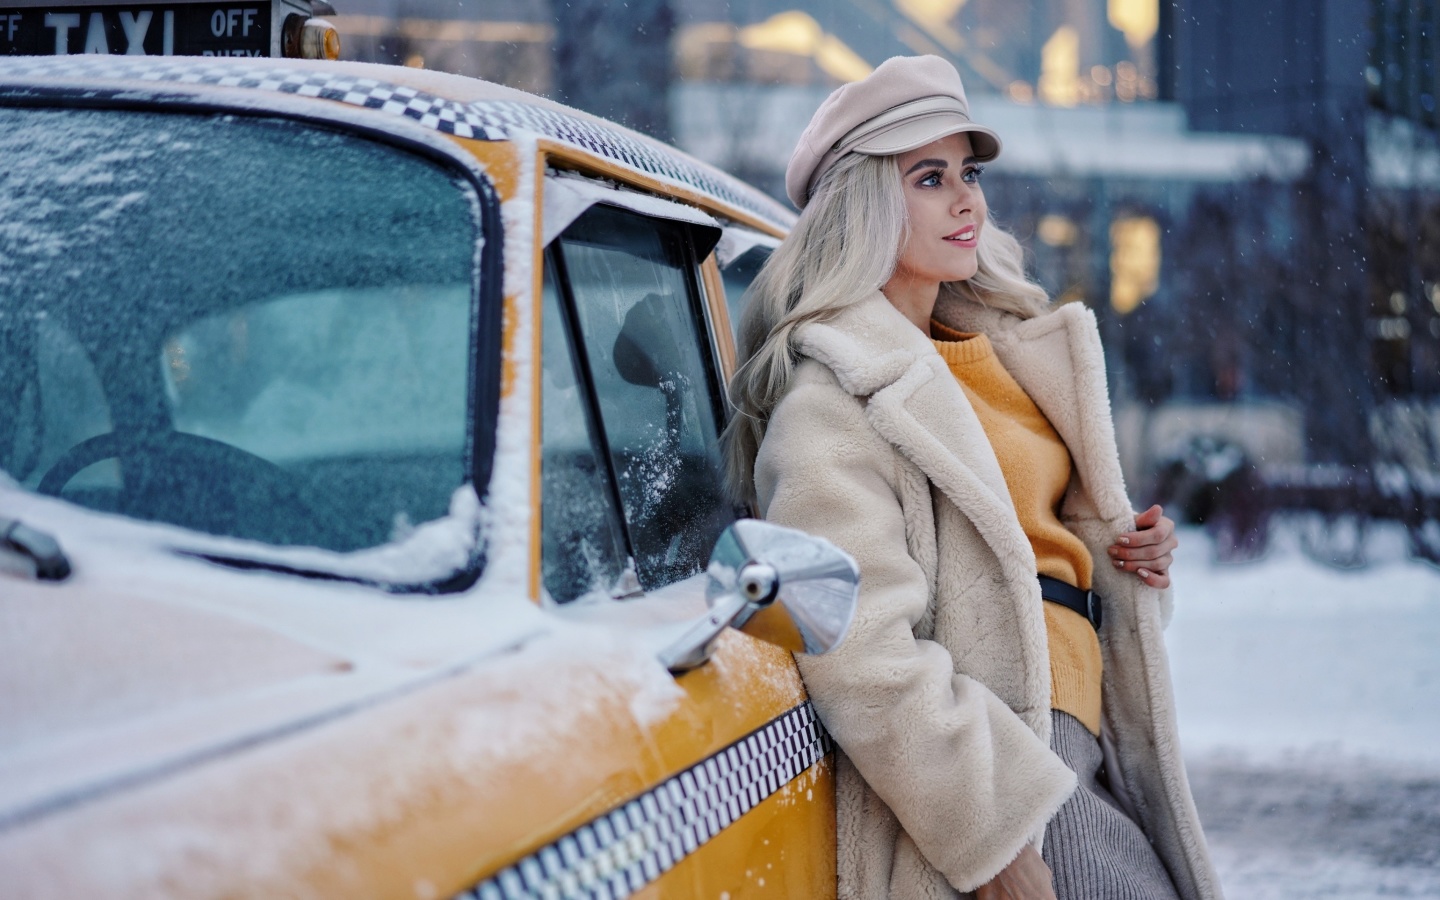 Обои Winter Girl and Taxi 1440x900